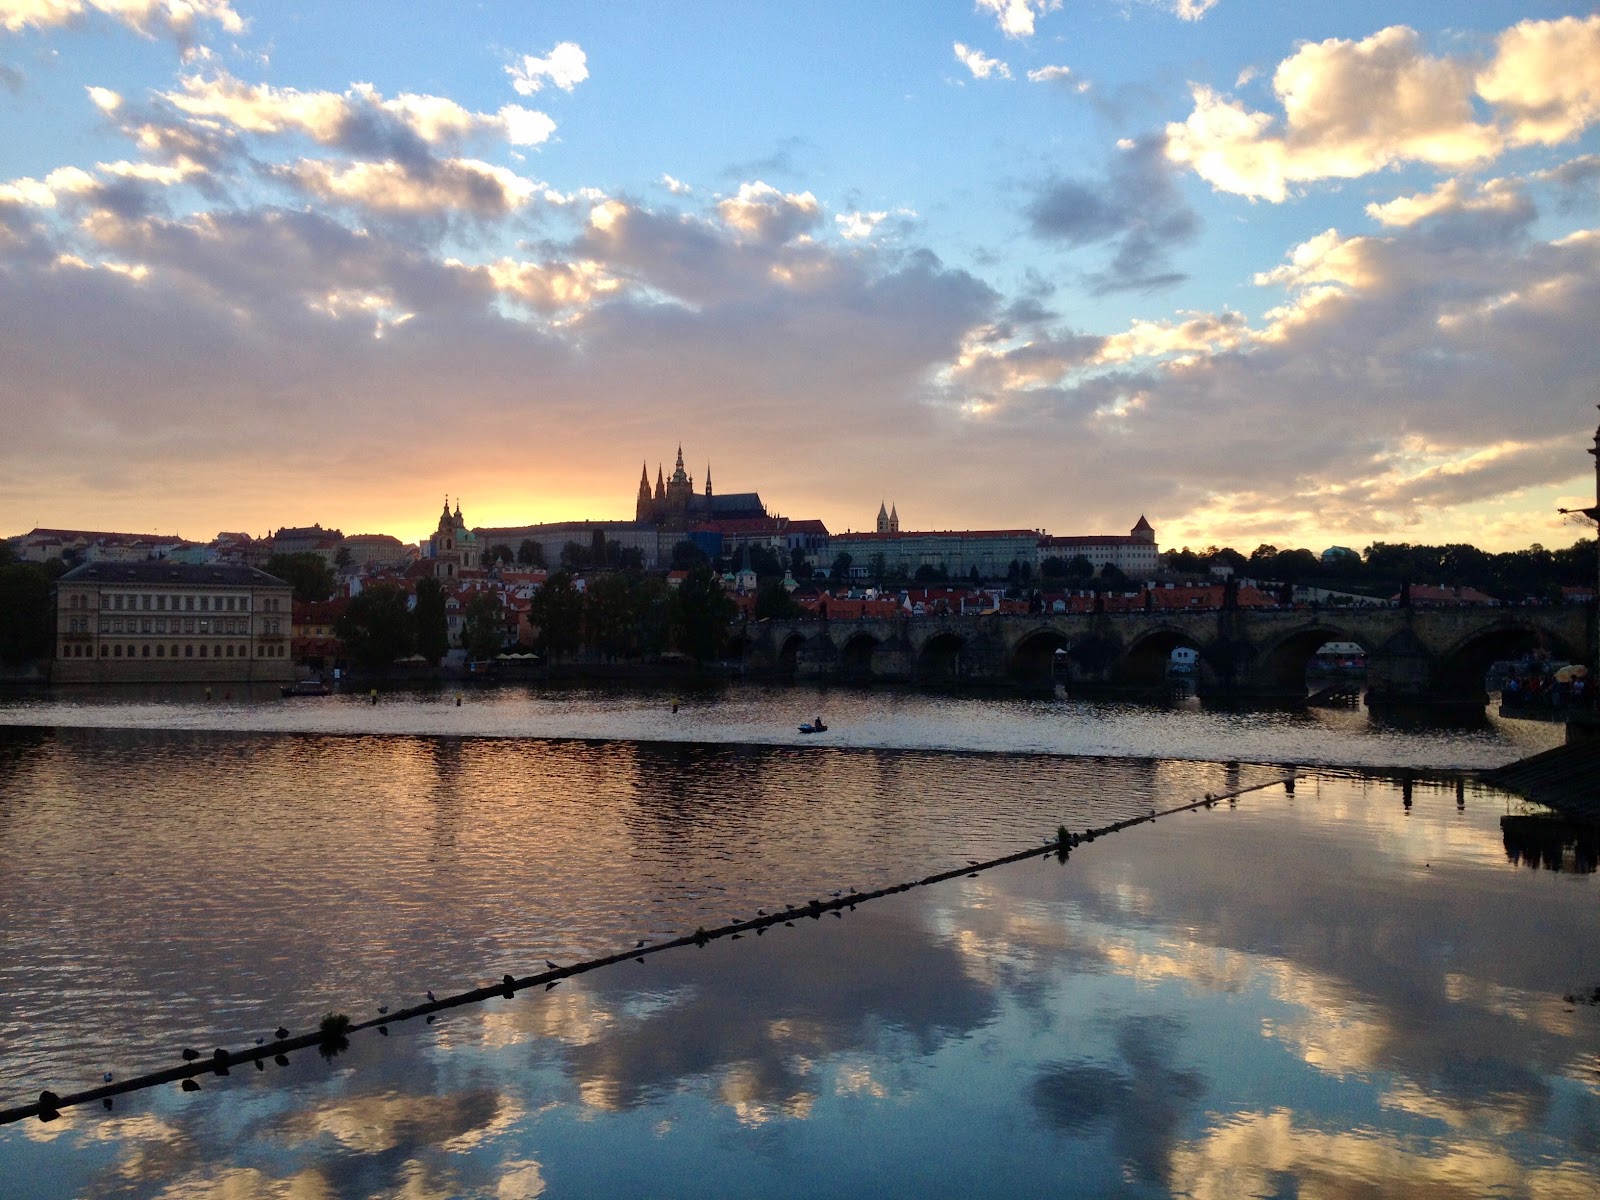 instagrammable spots in Prague